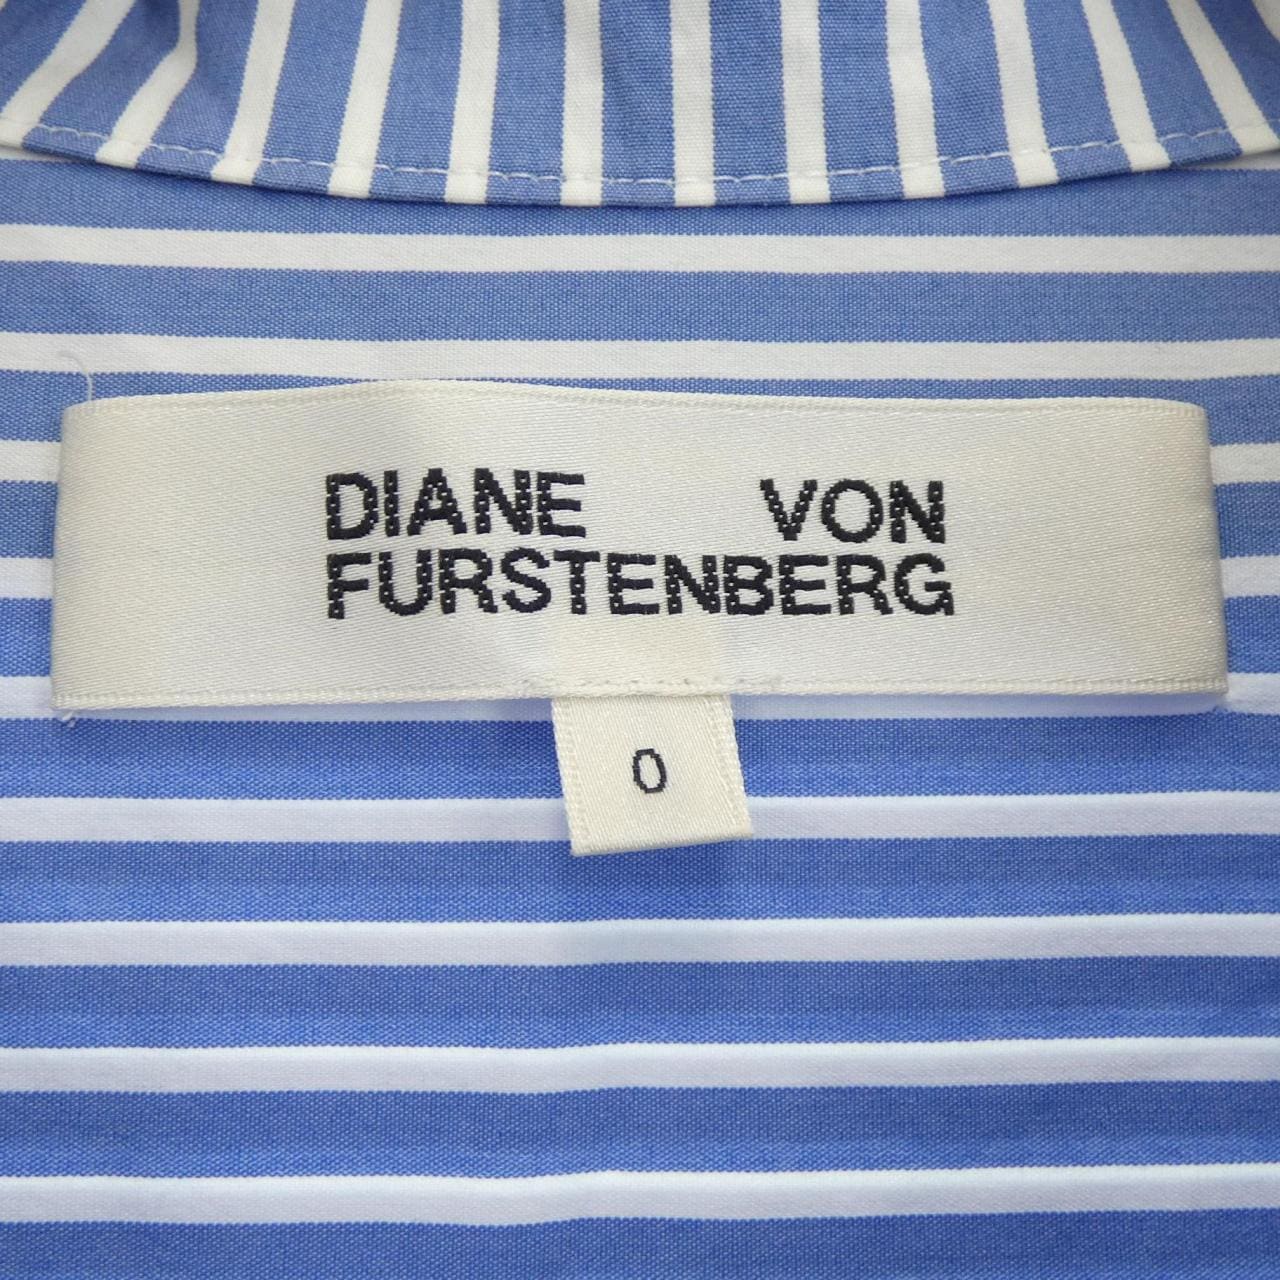 Diane von Furstenberg DIANE von FURSTENBERG shirt